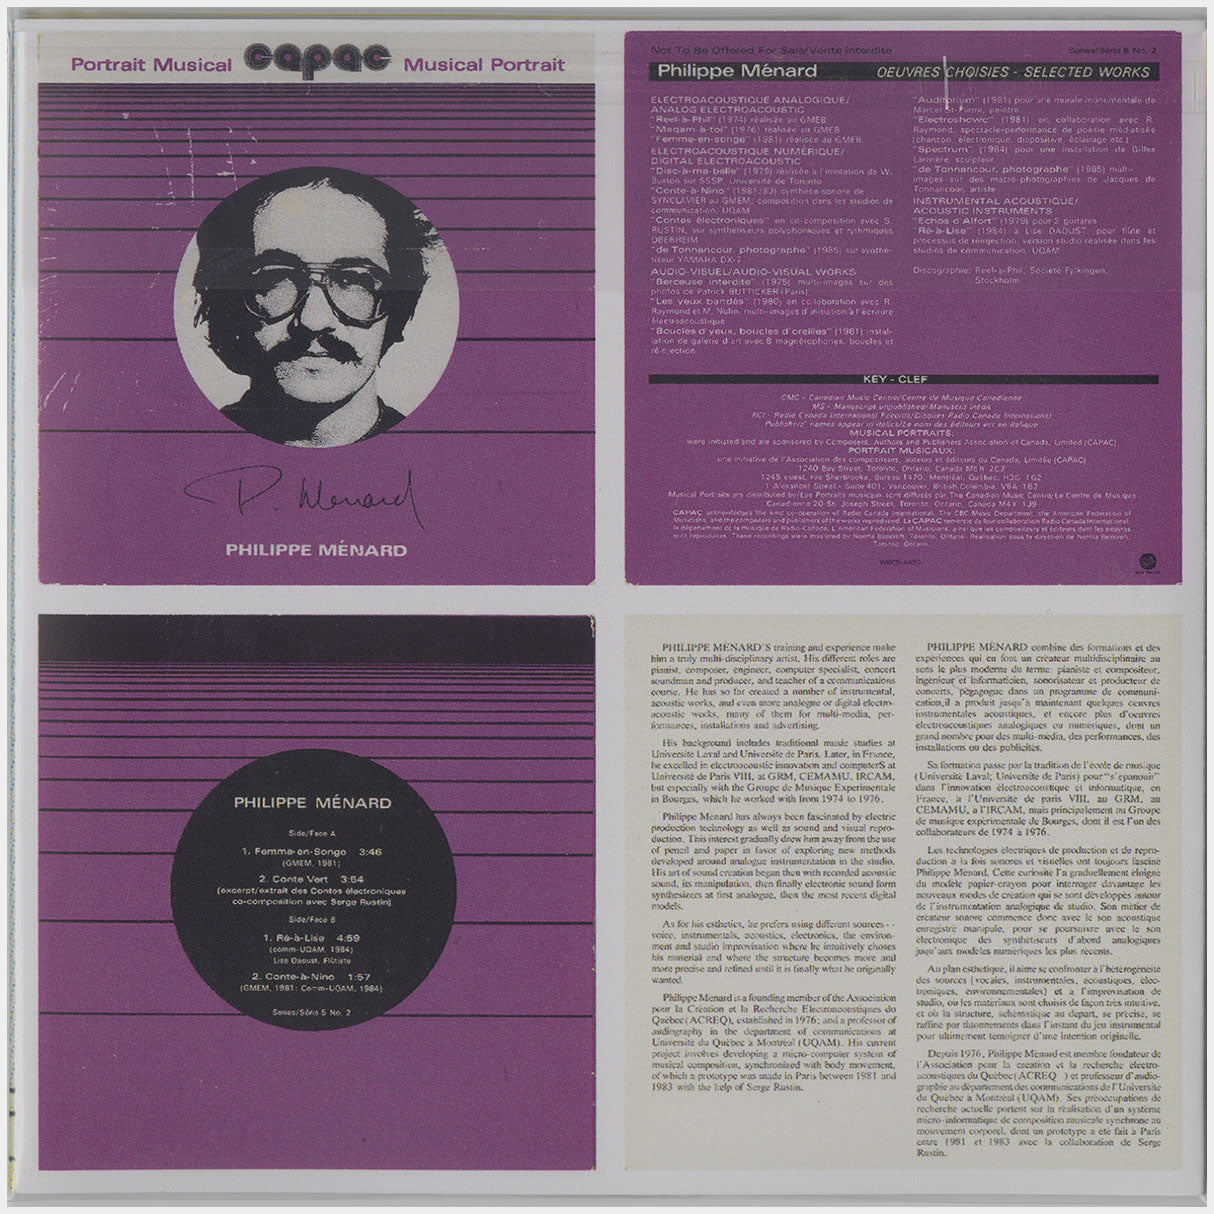 [CP 219 CD] Philippe Ménard, Serge Rustin; Contes Électroniques (En Couleurs), CAPAC Musical Portrait